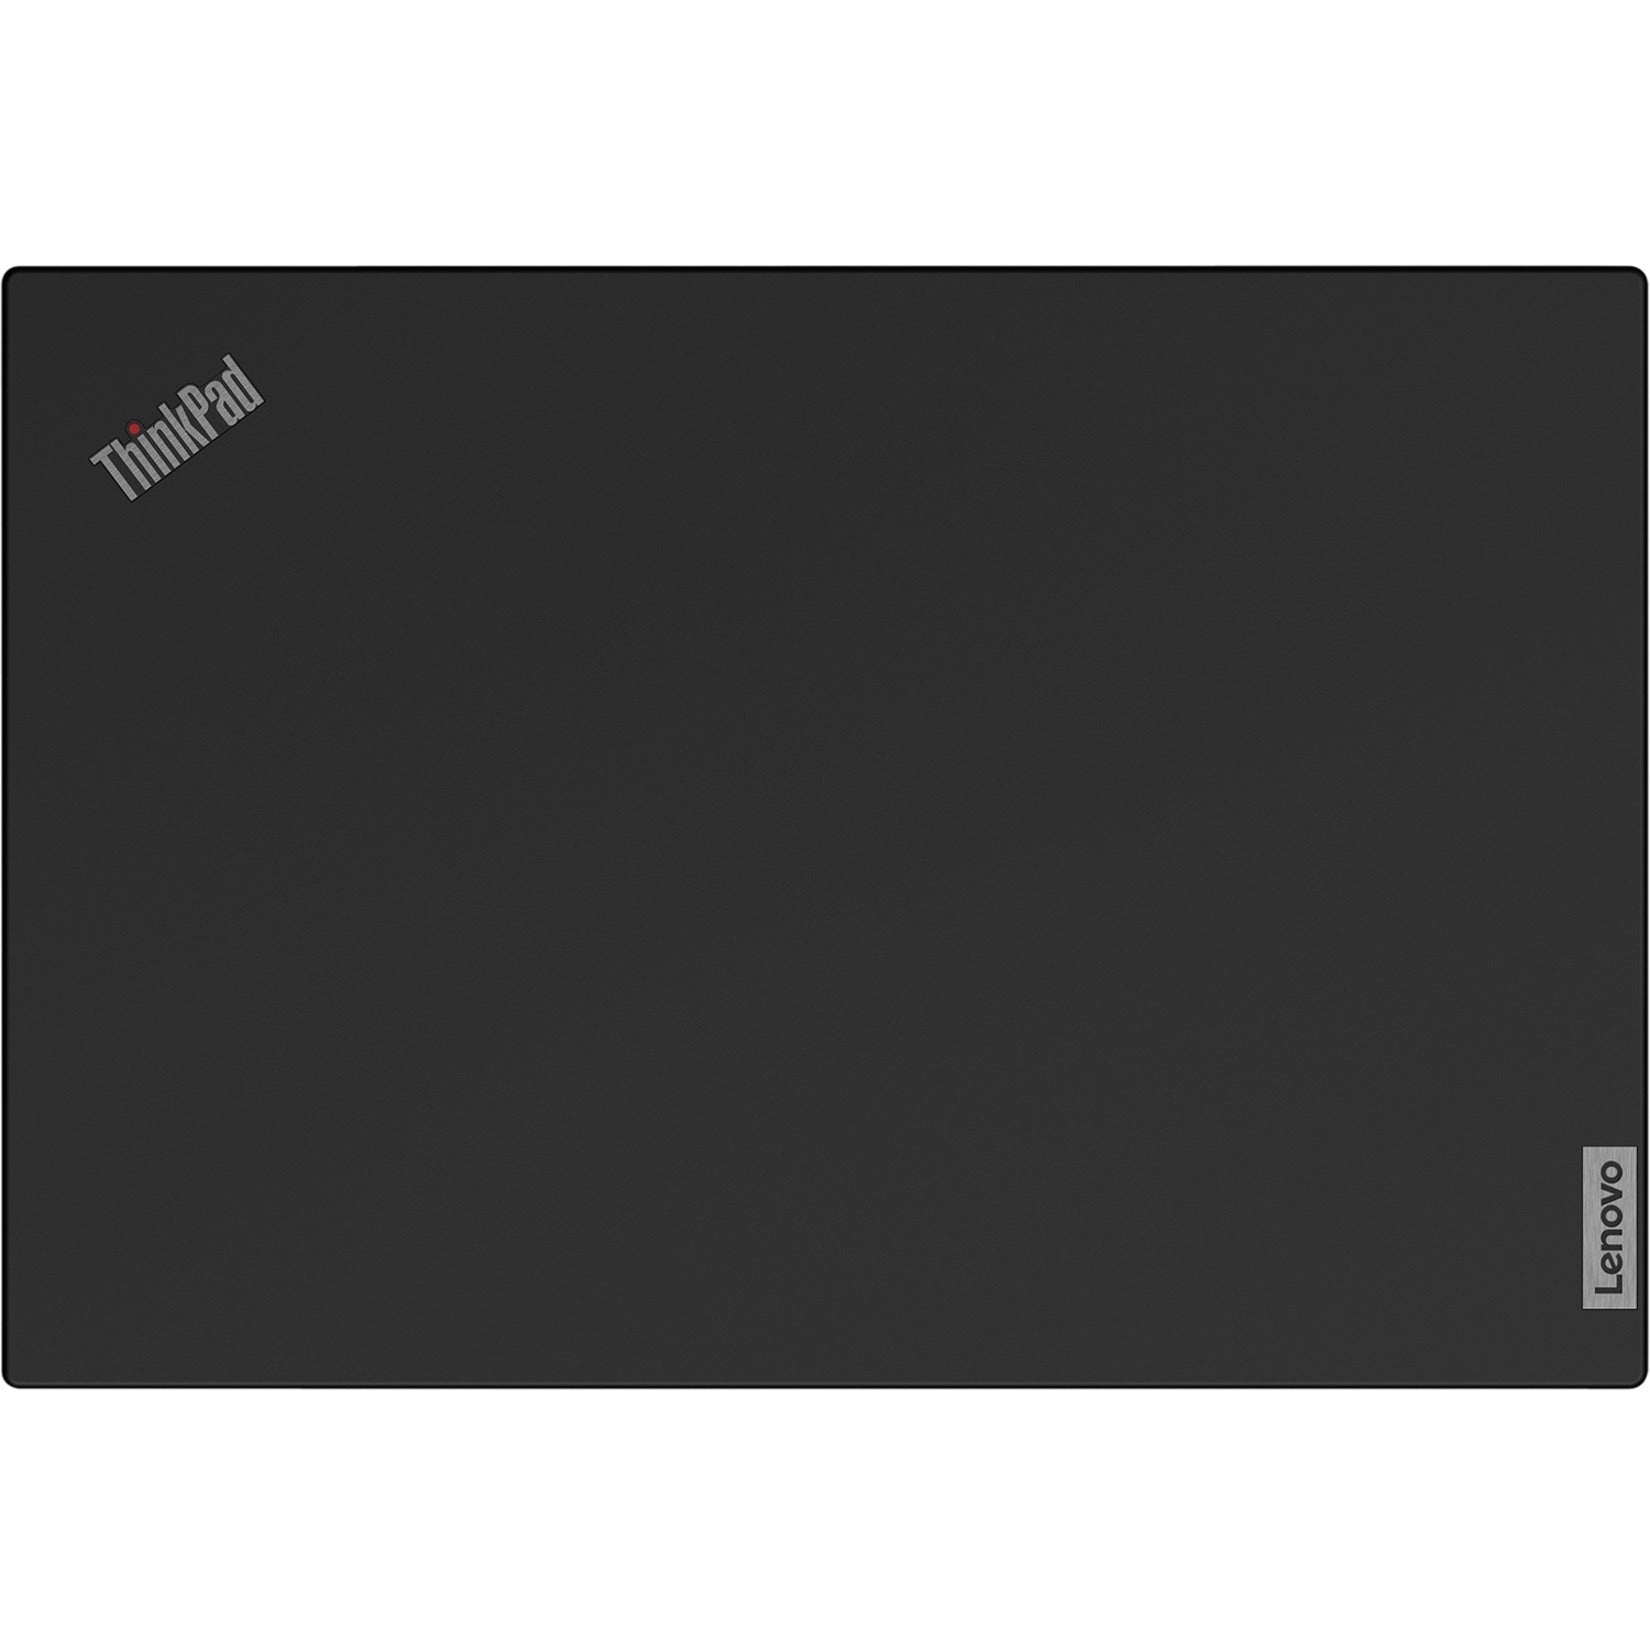 Lenovo 21A90036US ThinkPad P15v G2 15.6" Mobile Workstation, Intel Core i7, 16GB RAM, 512GB SSD